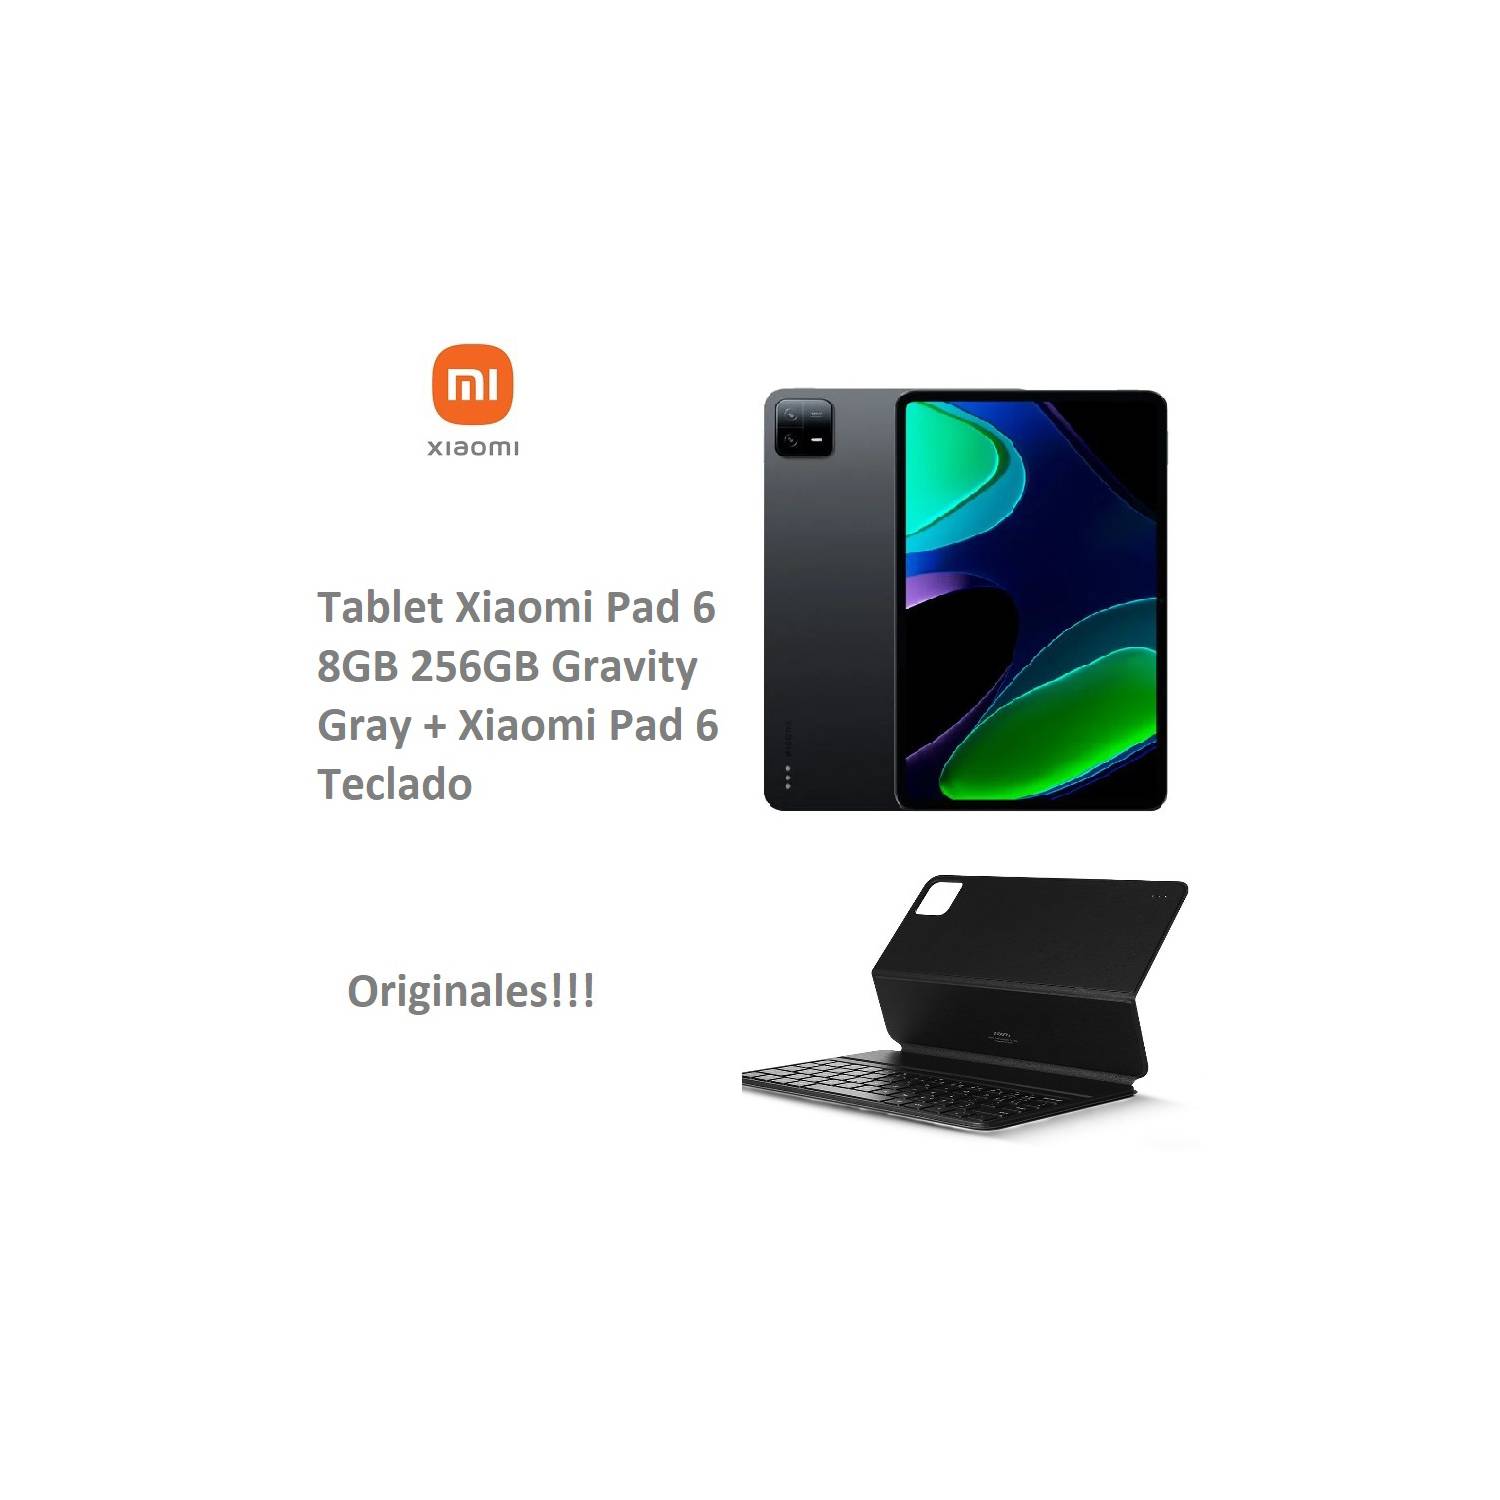 Tablet Xiaomi Pad 6 8GB 256GB Gravity Gray + Teclado Xiaomi Pad 6 XIAOMI